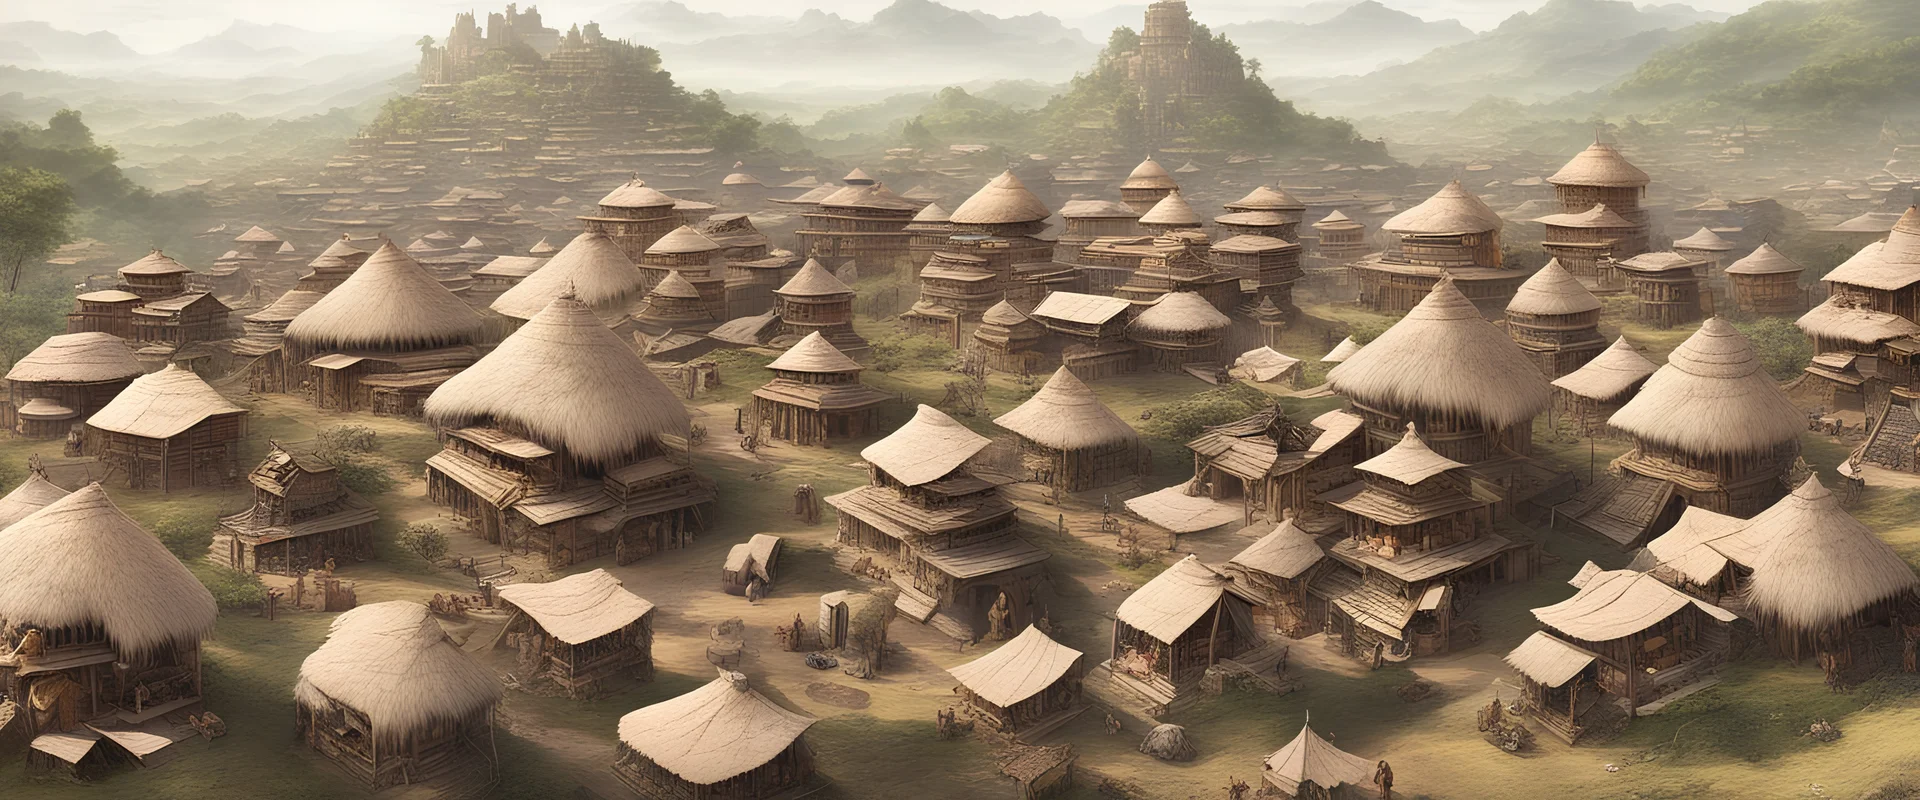 cidade feita com Cabanas tribais em cima de animal gigante